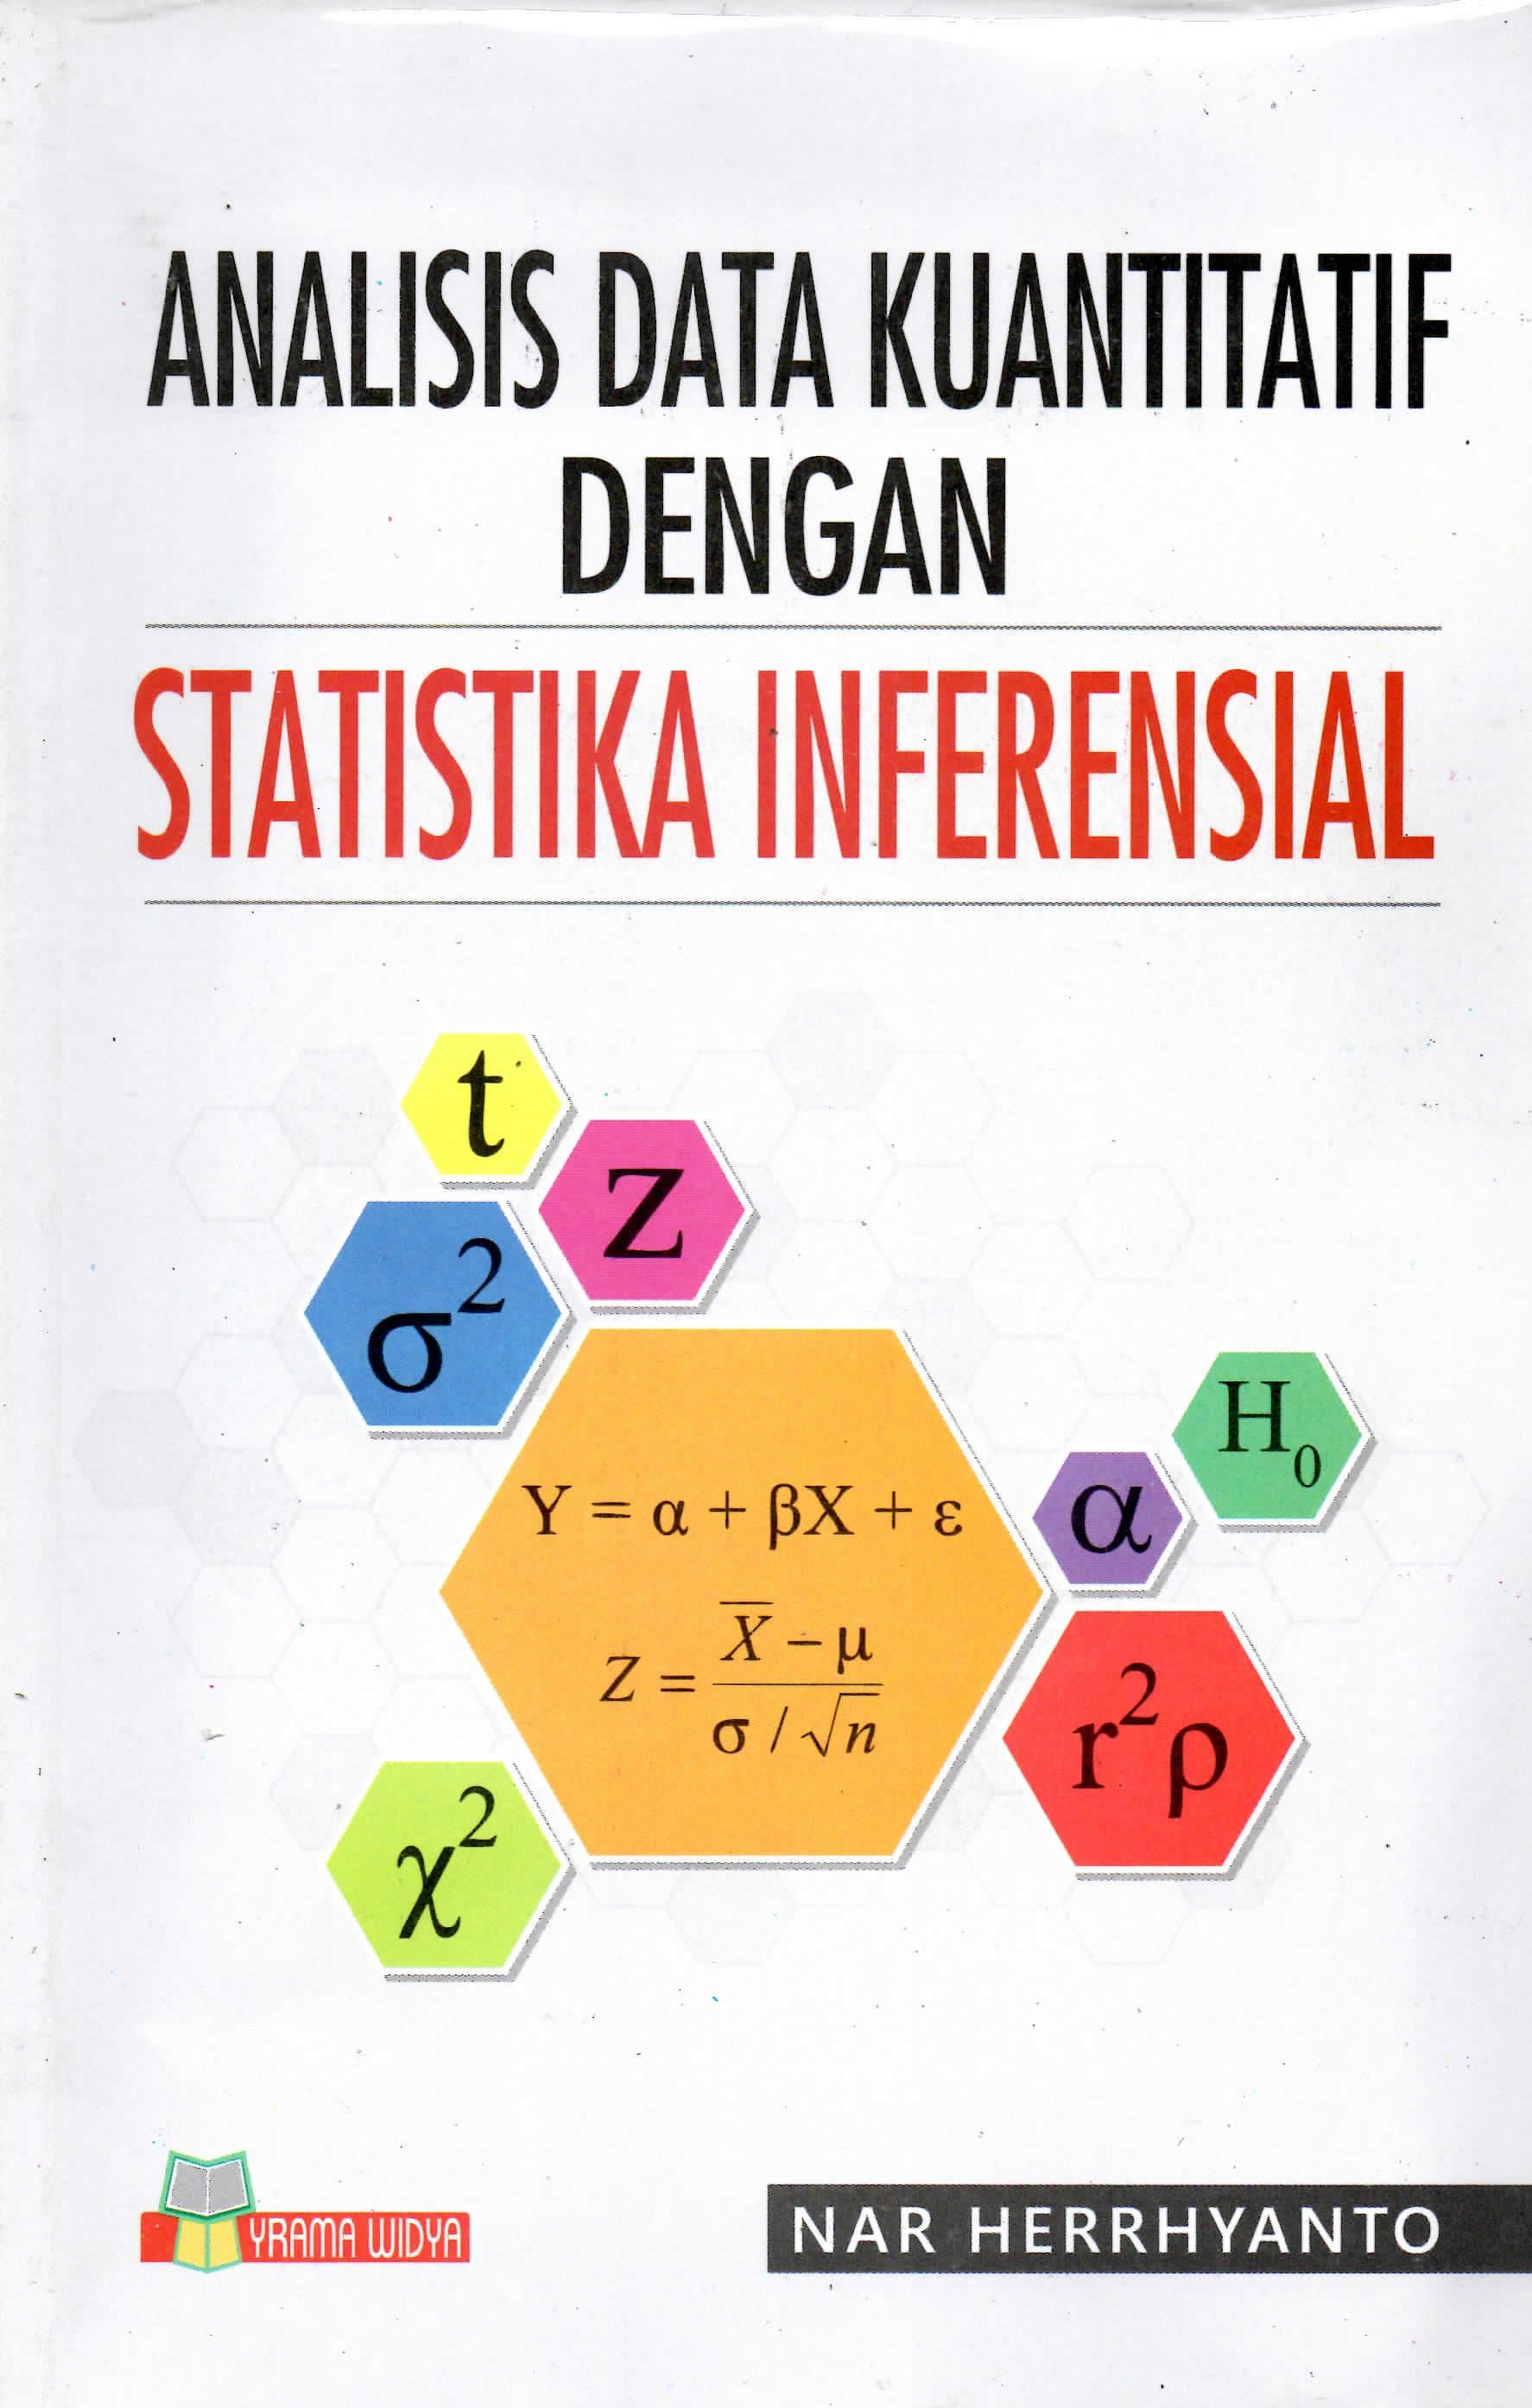 Analisis data kuantitatif dengan statistika inferensial 